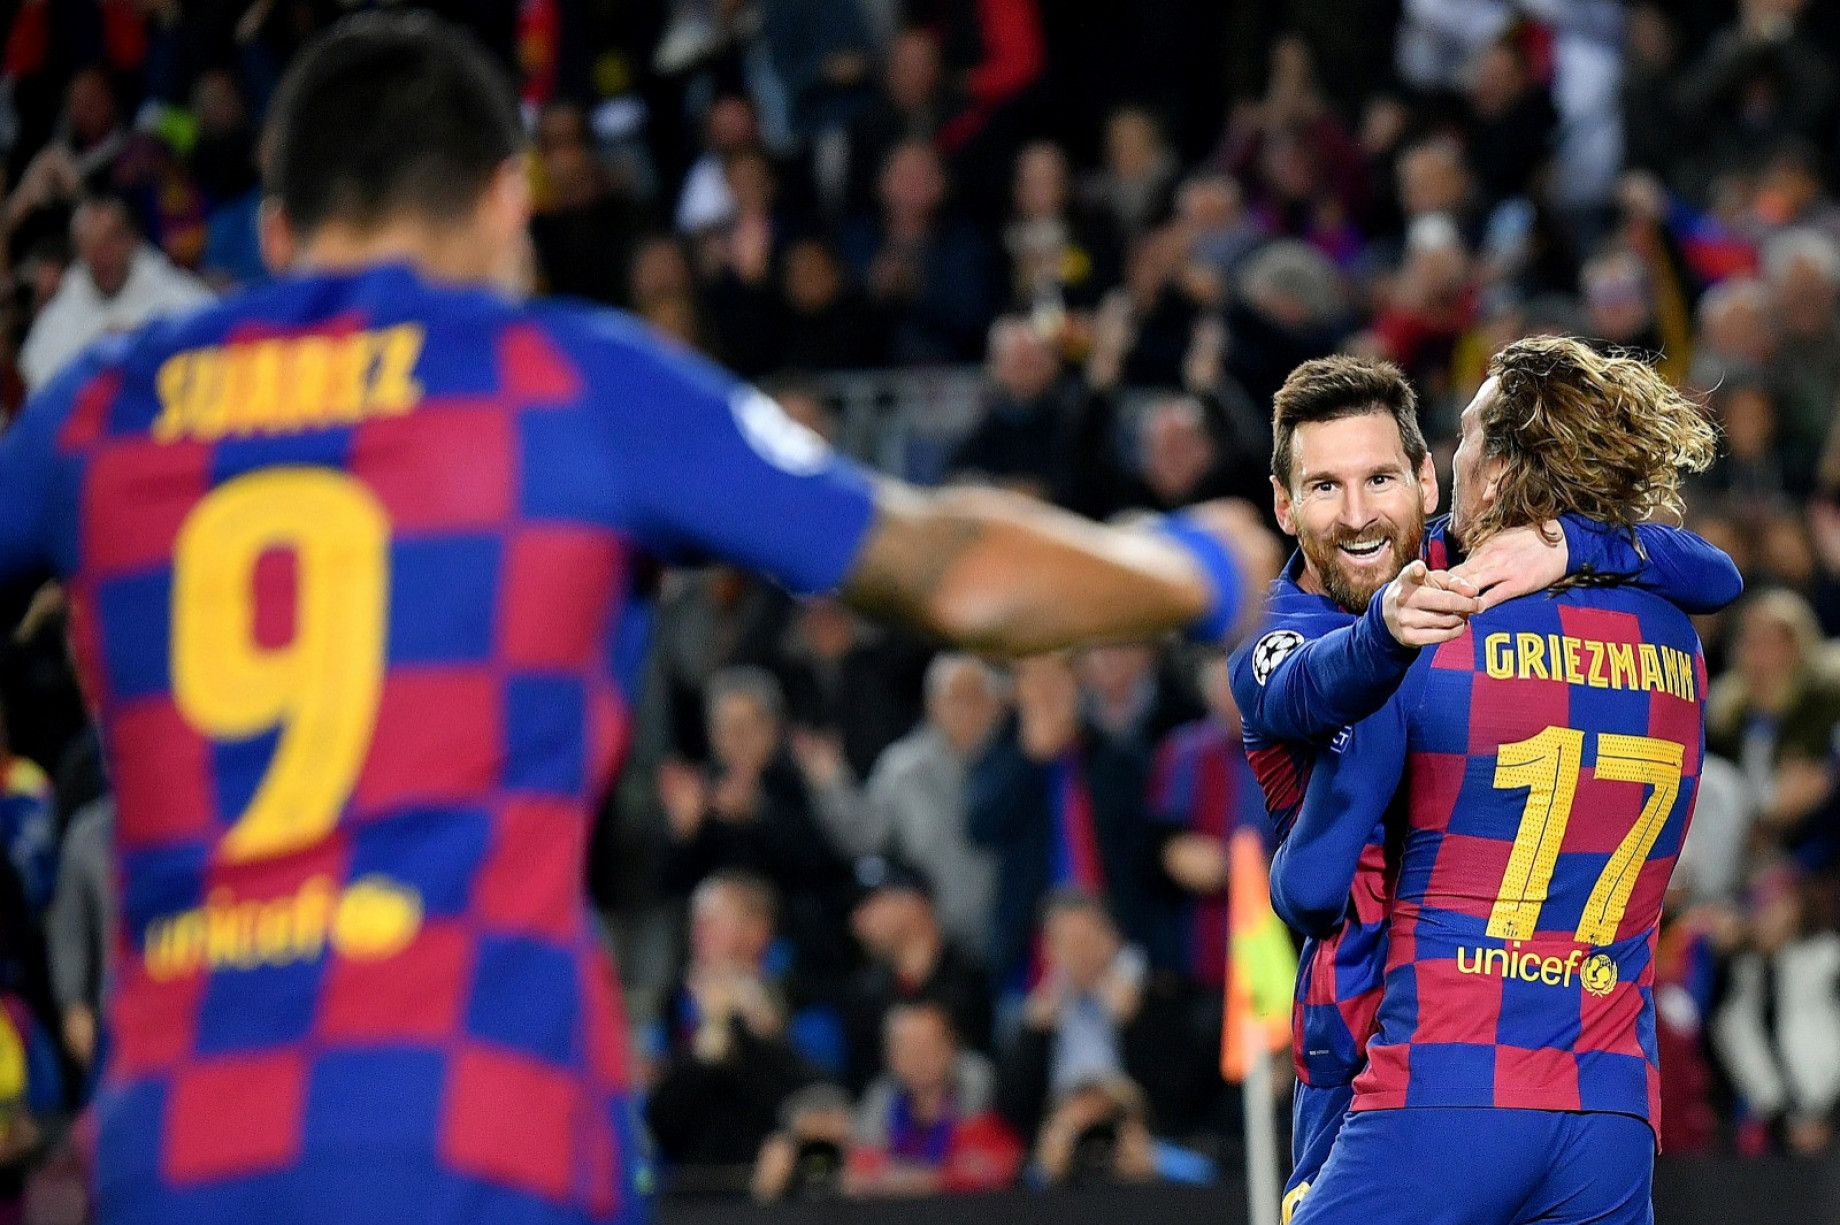 Messi_Griezmann_Suarez_Barcellona_IMAGEGALLERY_.jpg